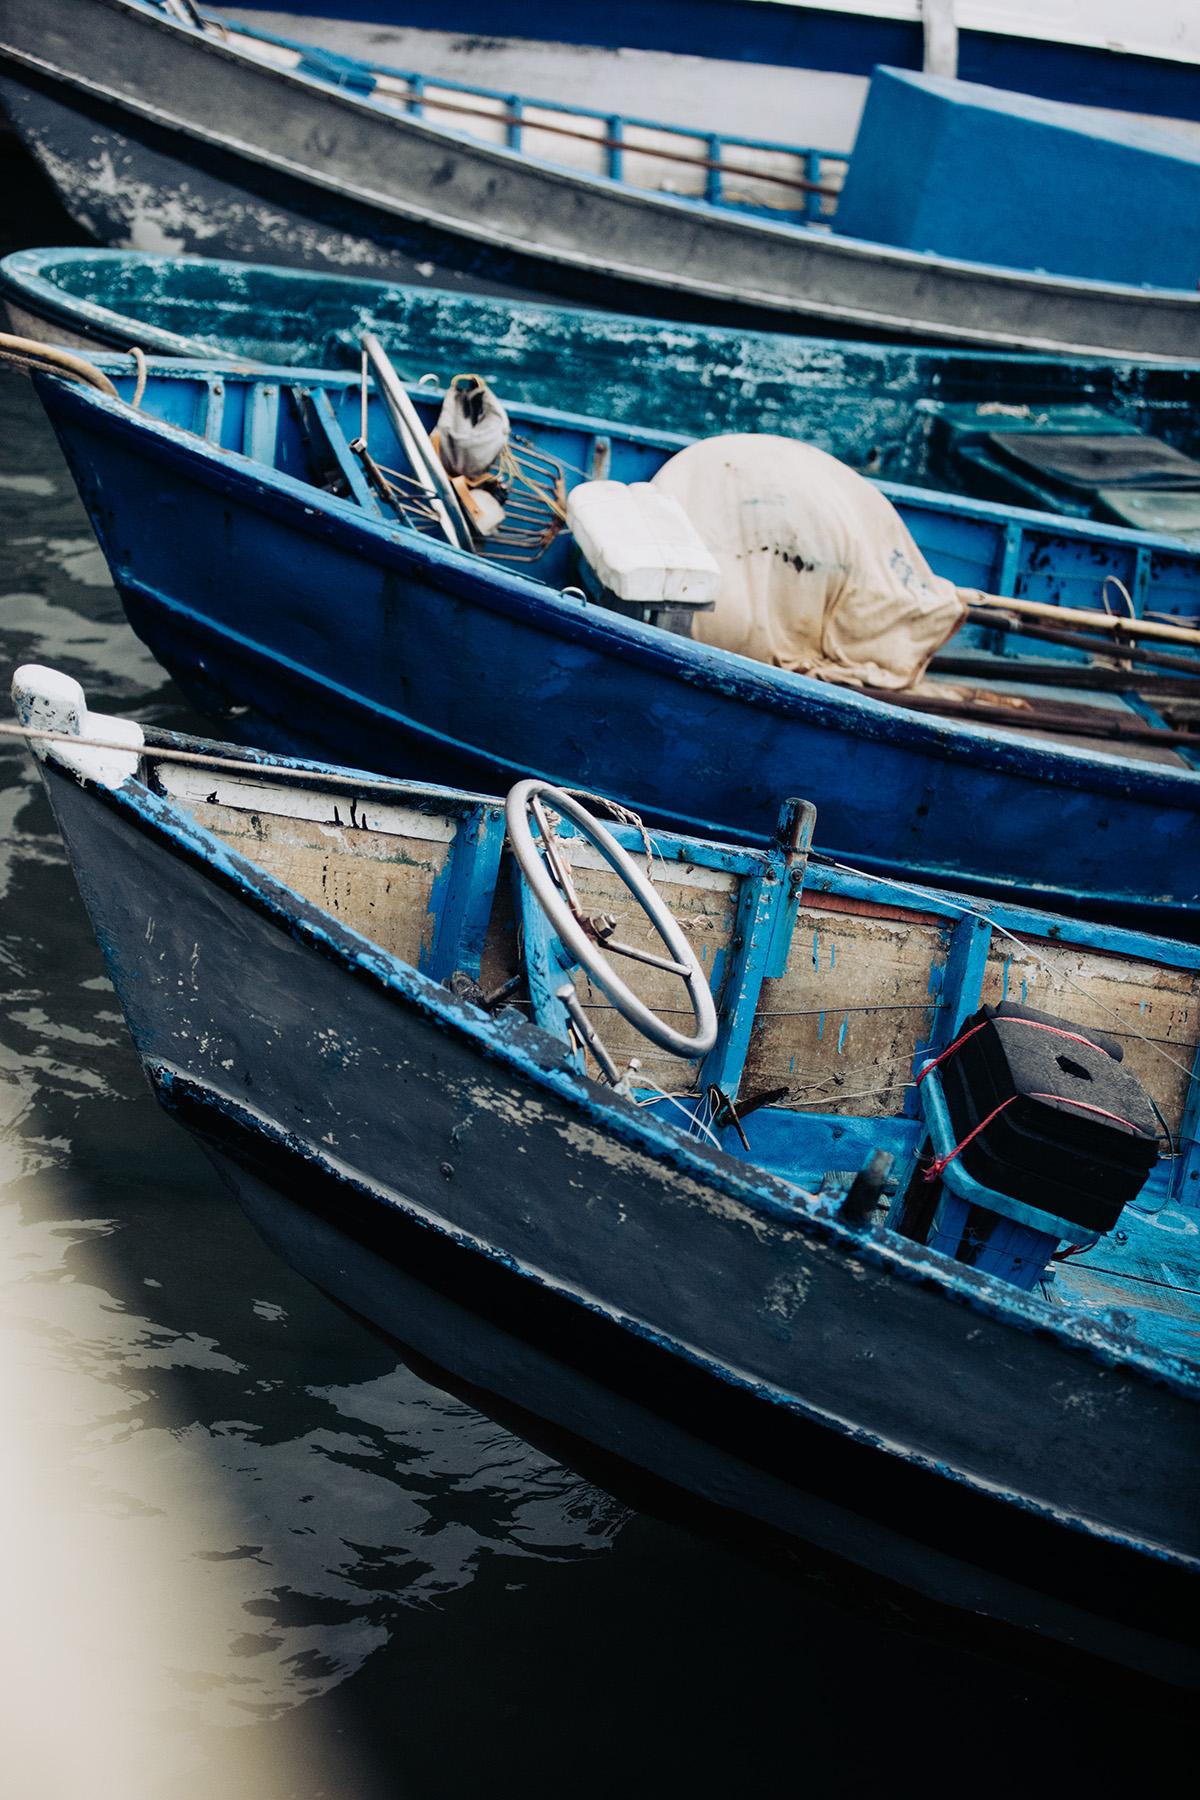 Bootsfotografie, "Sapphire Seas" 

WEISHEITEN, DIE ICH GELERNT HABE:
"Eine der interessanten Tatsachen, die ich bei dieser besonderen Produktionserfahrung gelernt habe, war, dass in der vietnamesischen Kultur Rot für Wohlstand steht." -